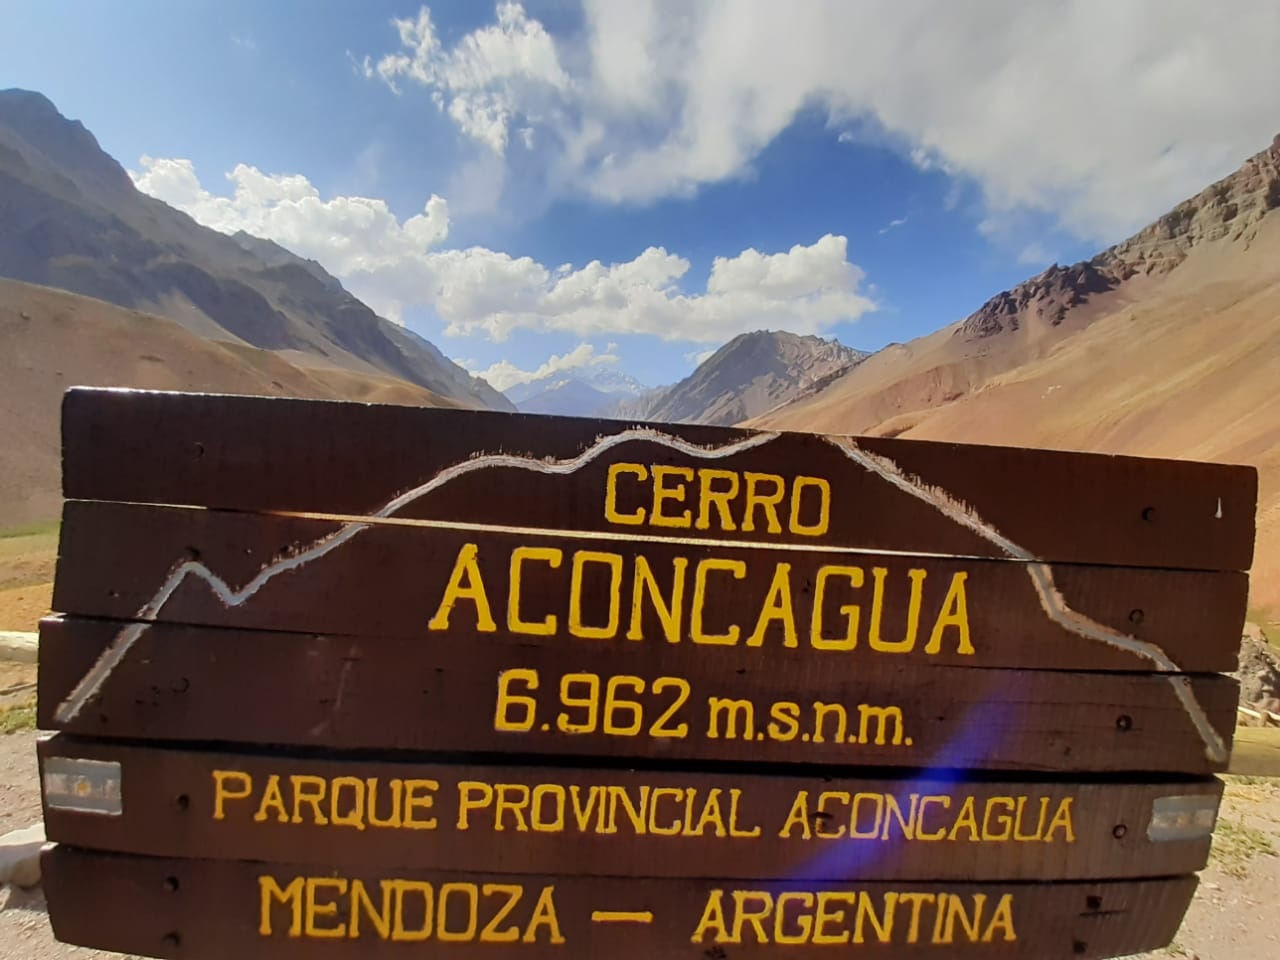 tourhub | Unu Raymi Tour Operator & Lodges | ACONCAGUA SUMMIT | Aconcag